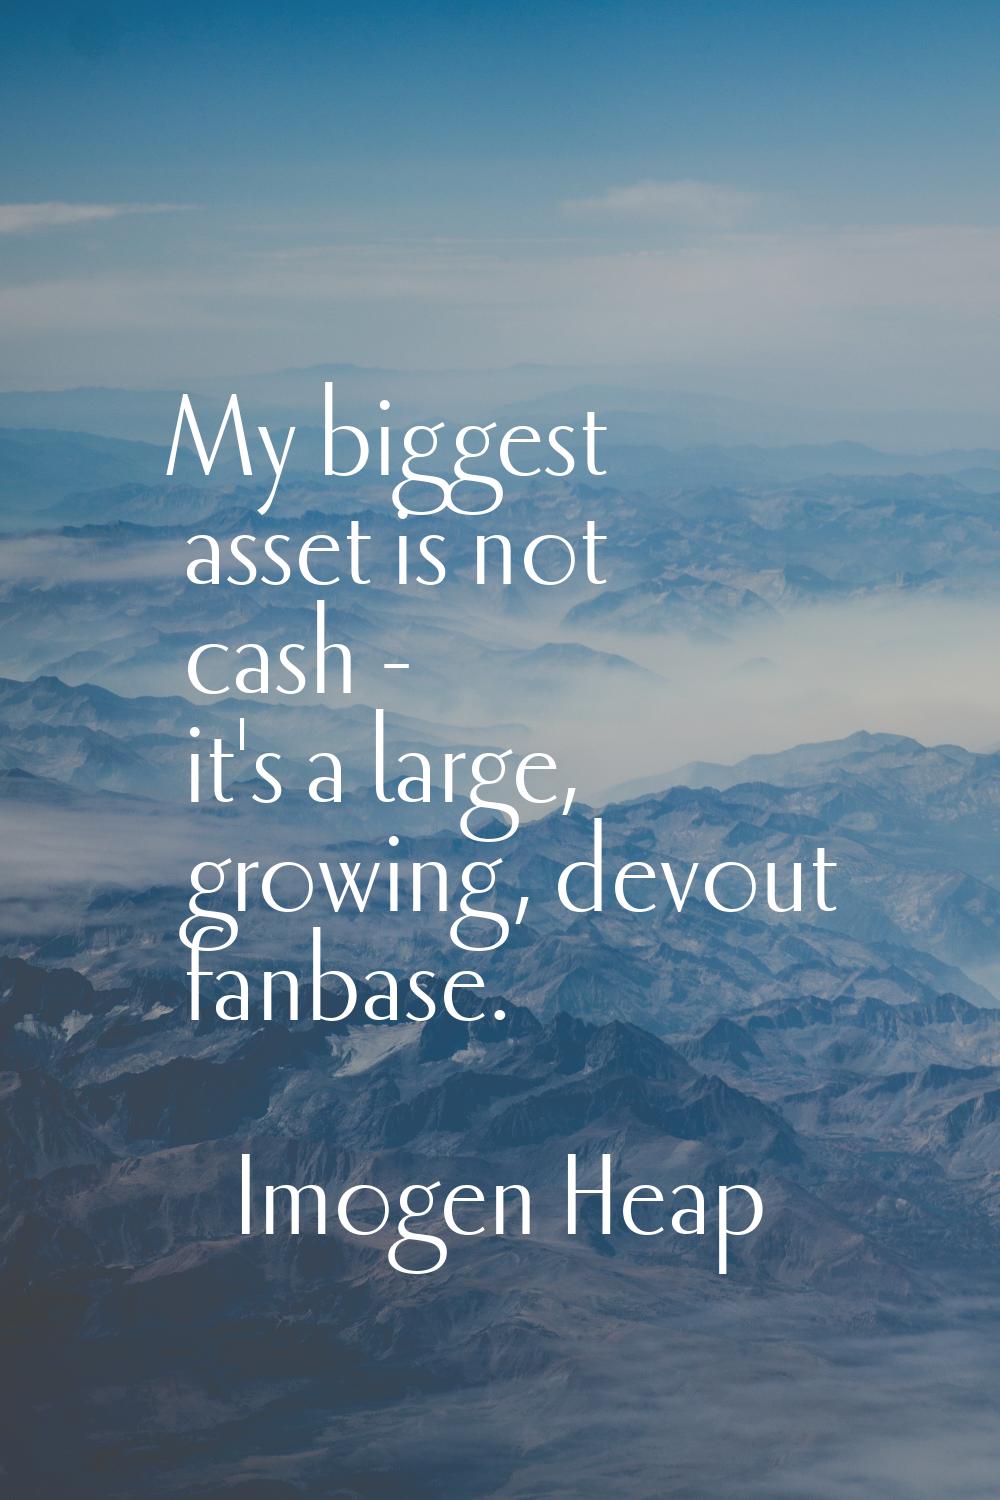 My biggest asset is not cash - it's a large, growing, devout fanbase.